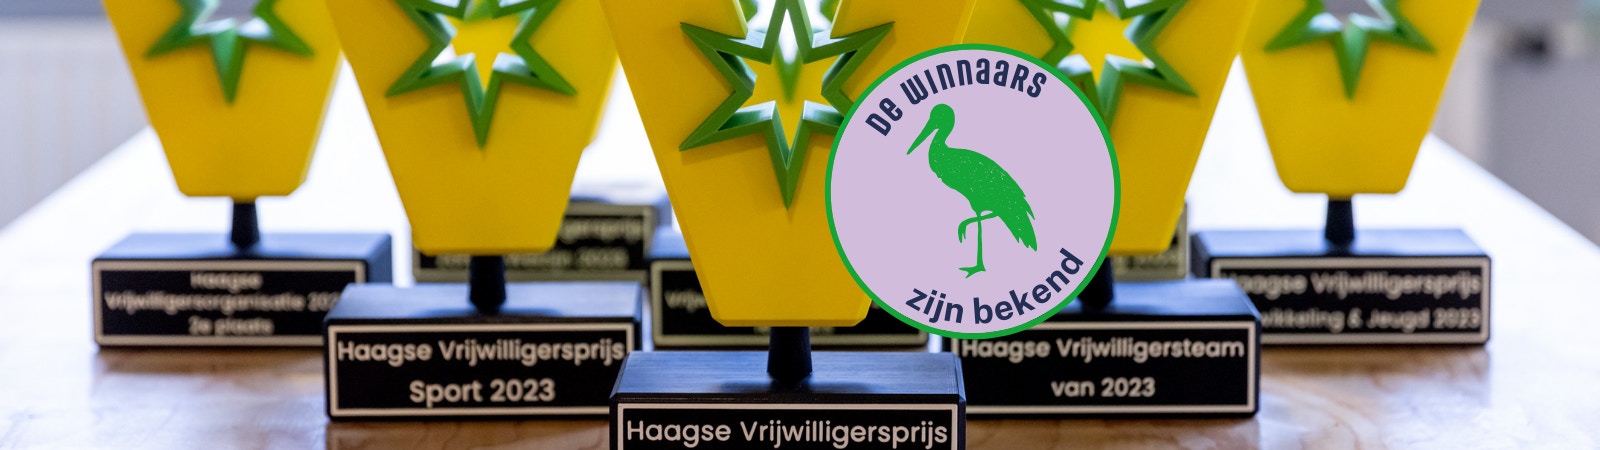 Haagse Vrijwilligersprijzen 2023